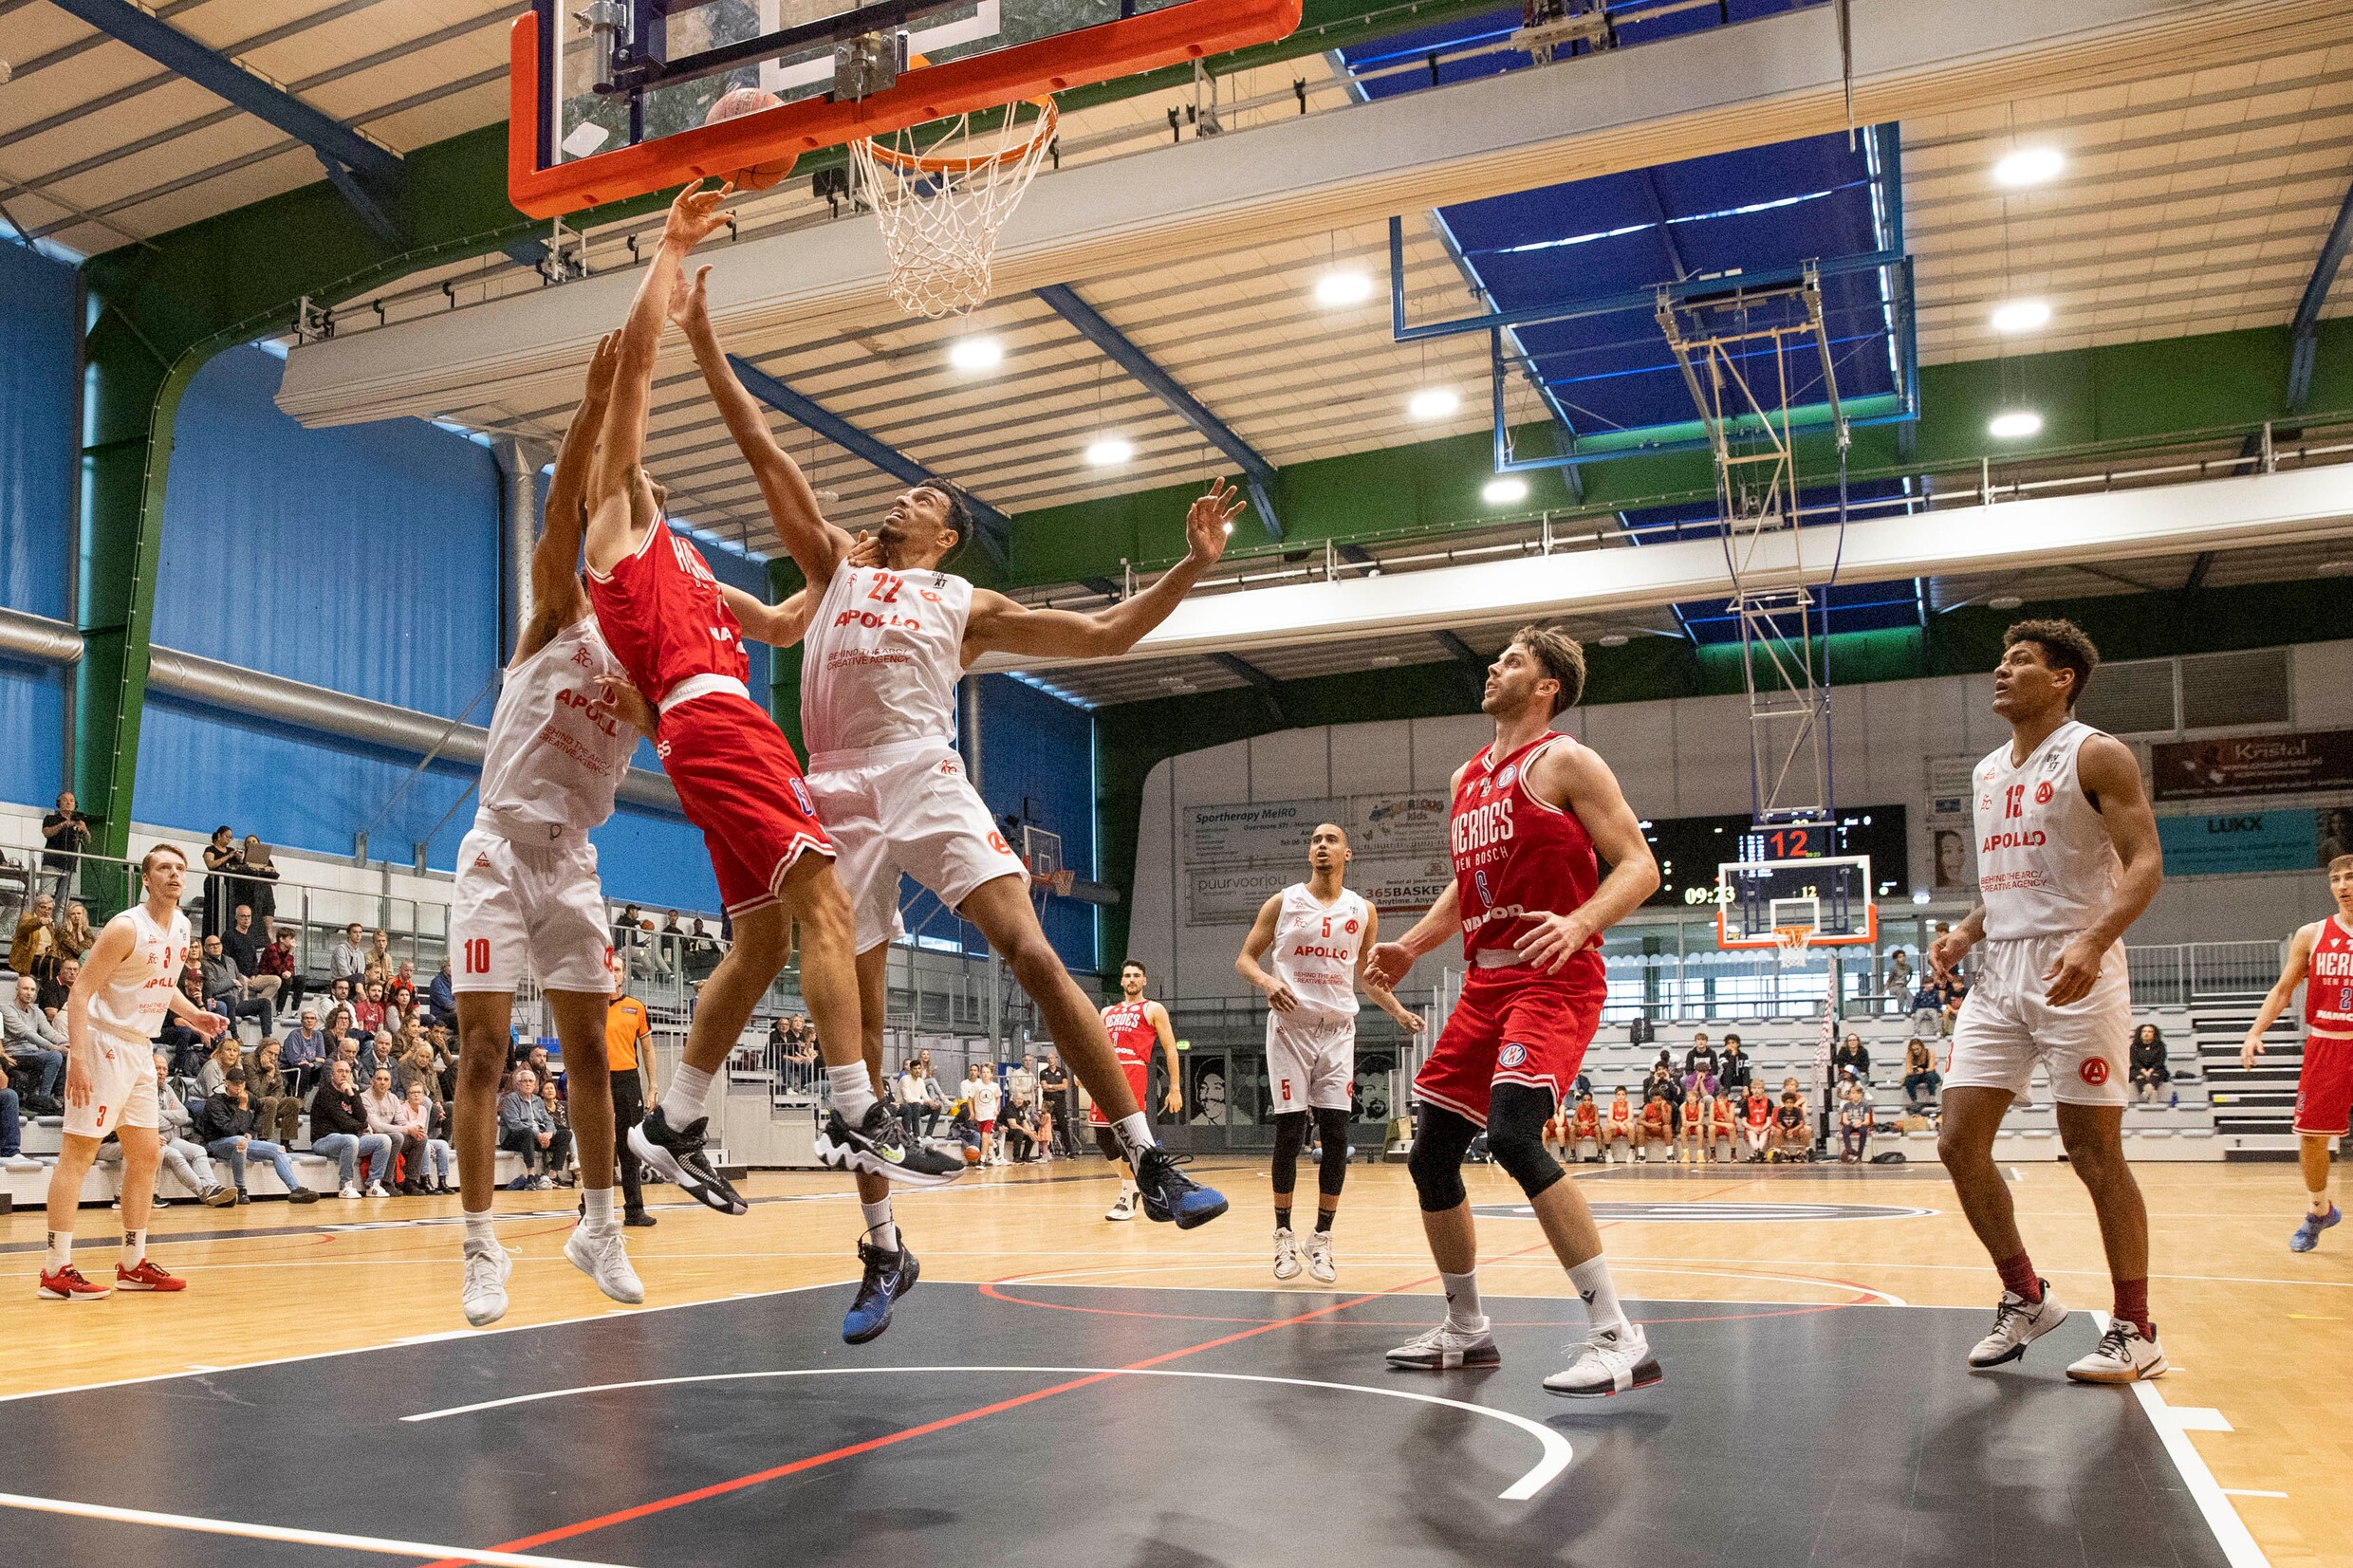 Basketbalclub Apollo Amsterdam verliest licentie door problemen met financiering